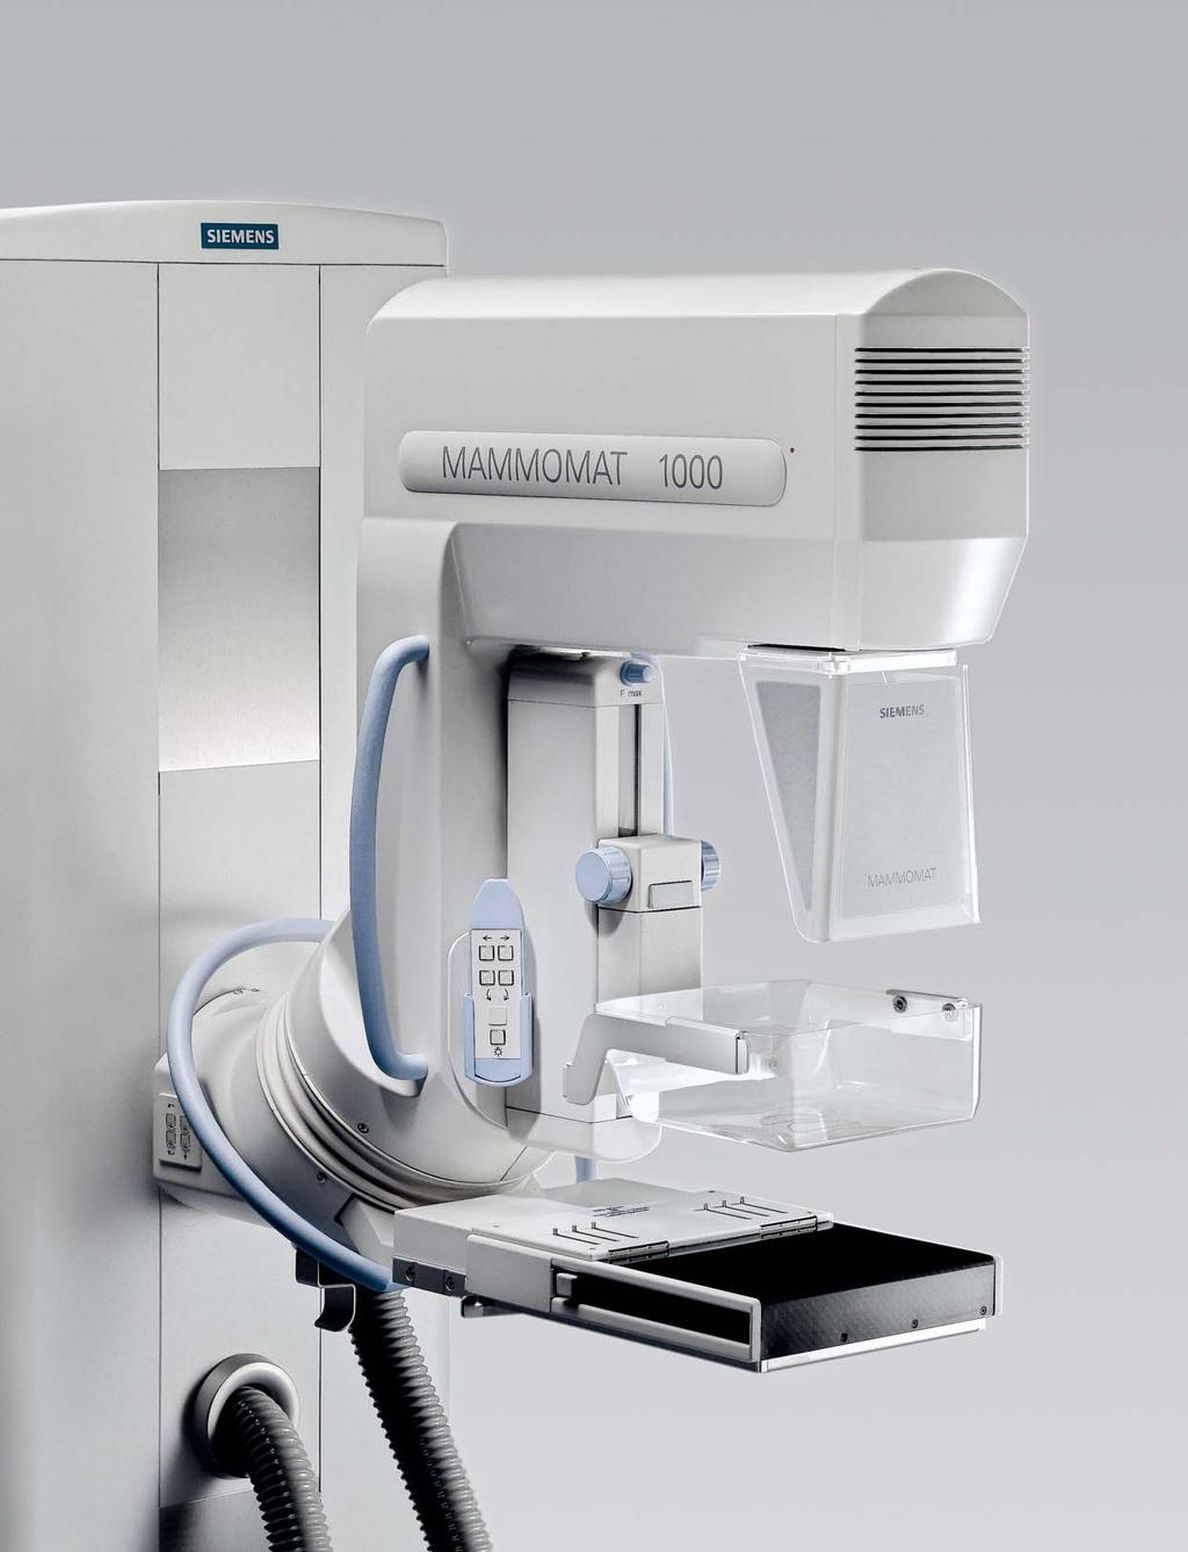 Siemens mammomat mammográfia készülék - Medicover